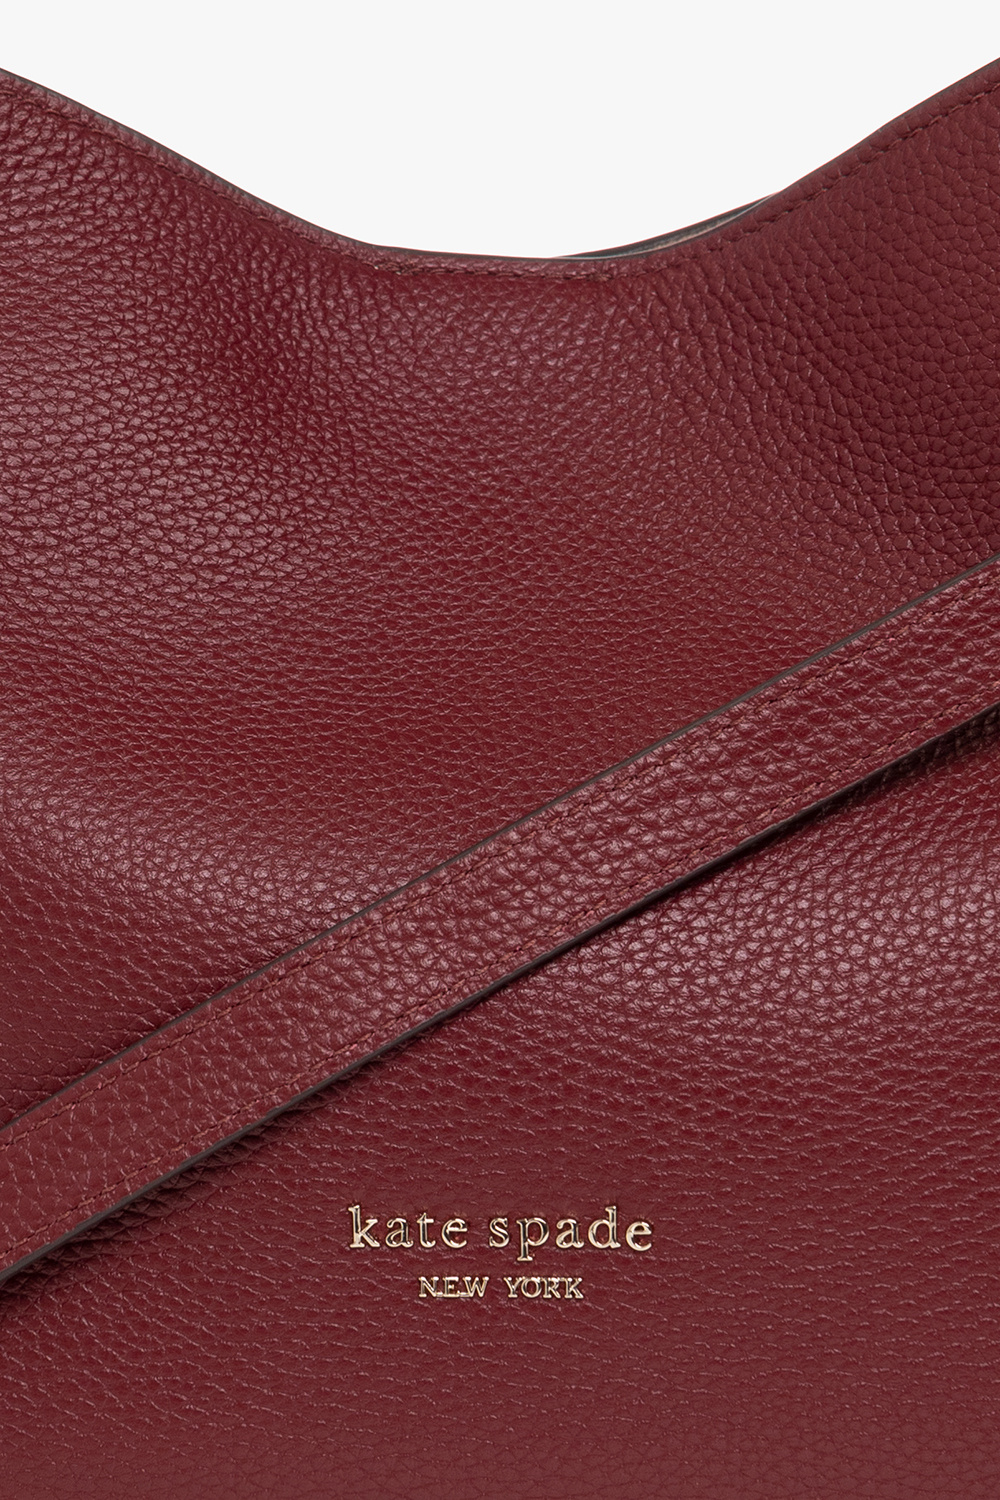 Kate Spade New York Knott Large Shoulder Bag - Autumnal Red